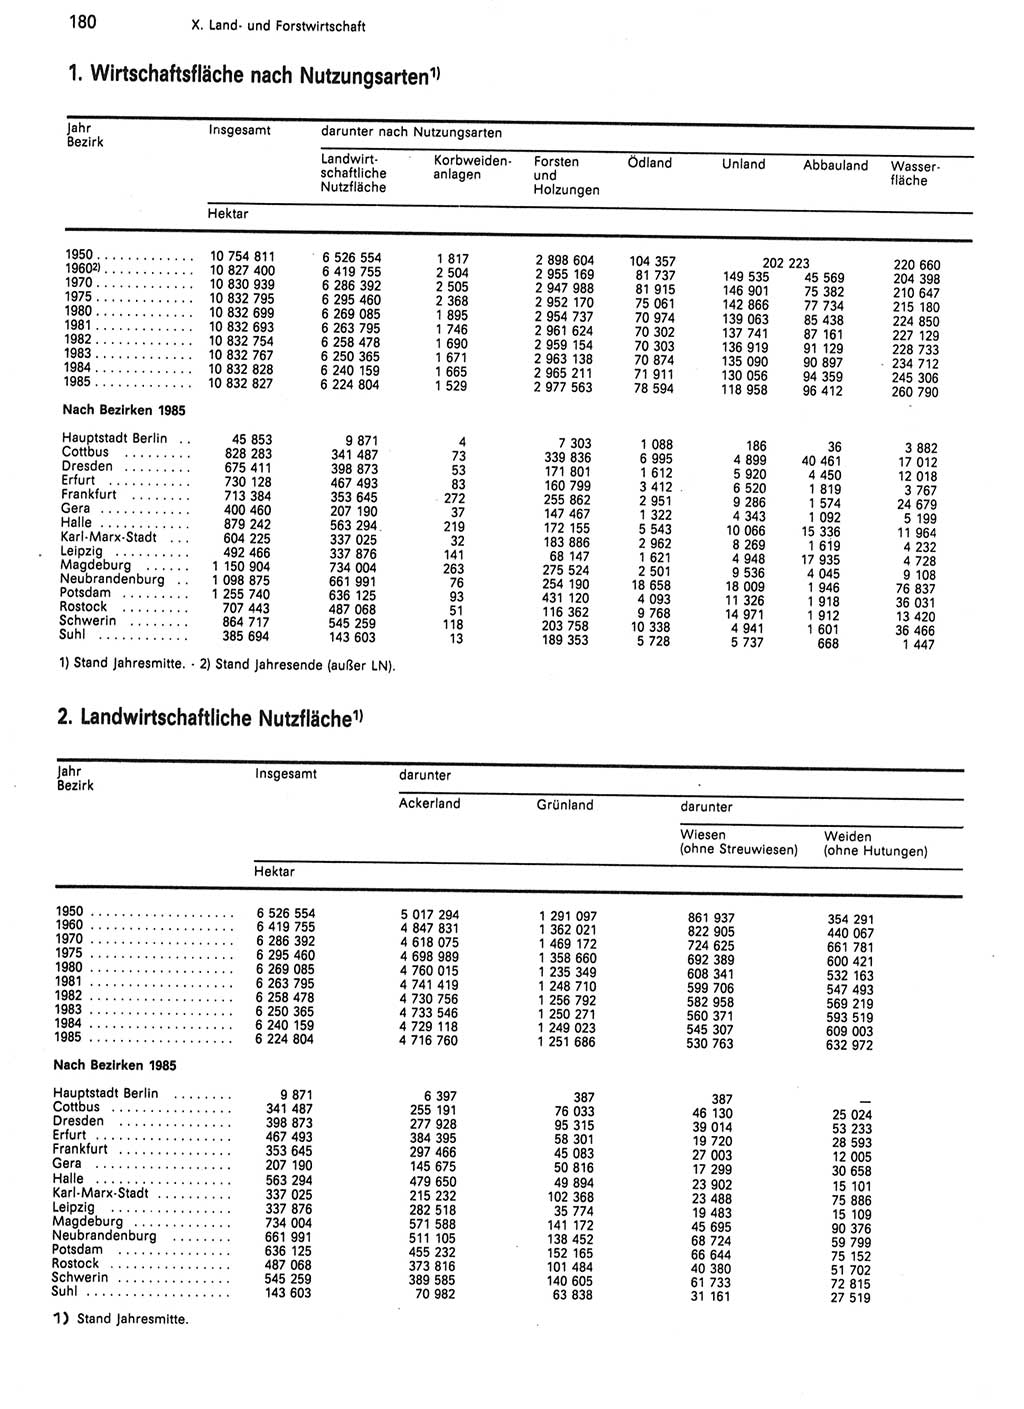 Statistisches Jahrbuch der Deutschen Demokratischen Republik (DDR) 1986, Seite 180 (Stat. Jb. DDR 1986, S. 180)